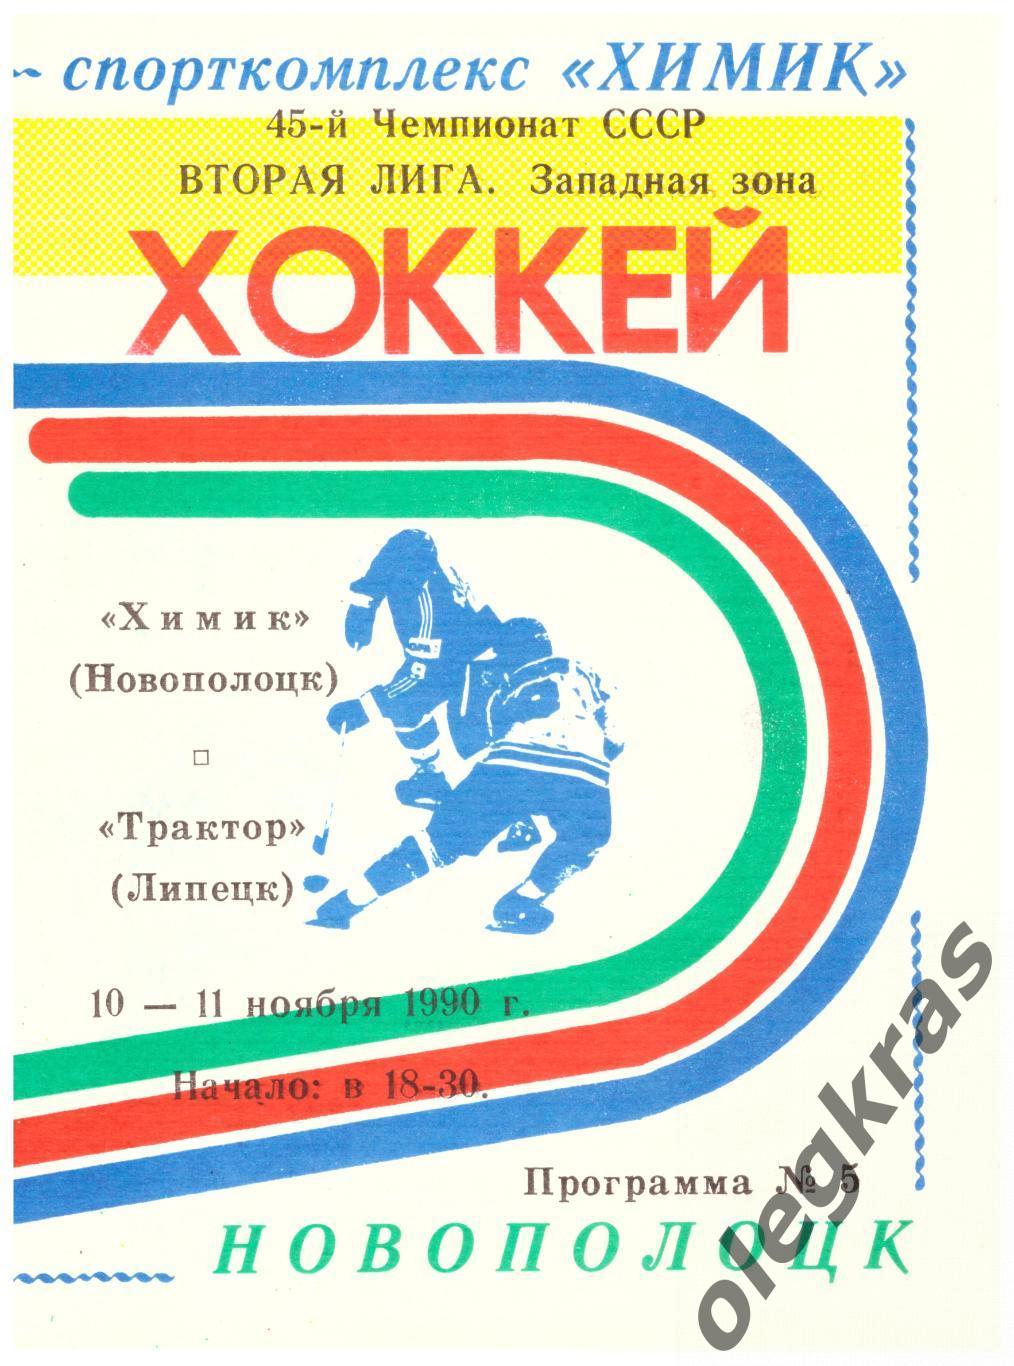 Химик(Новополоцк) - Трактор(Липецк) - 10-11 ноября 1990 года.